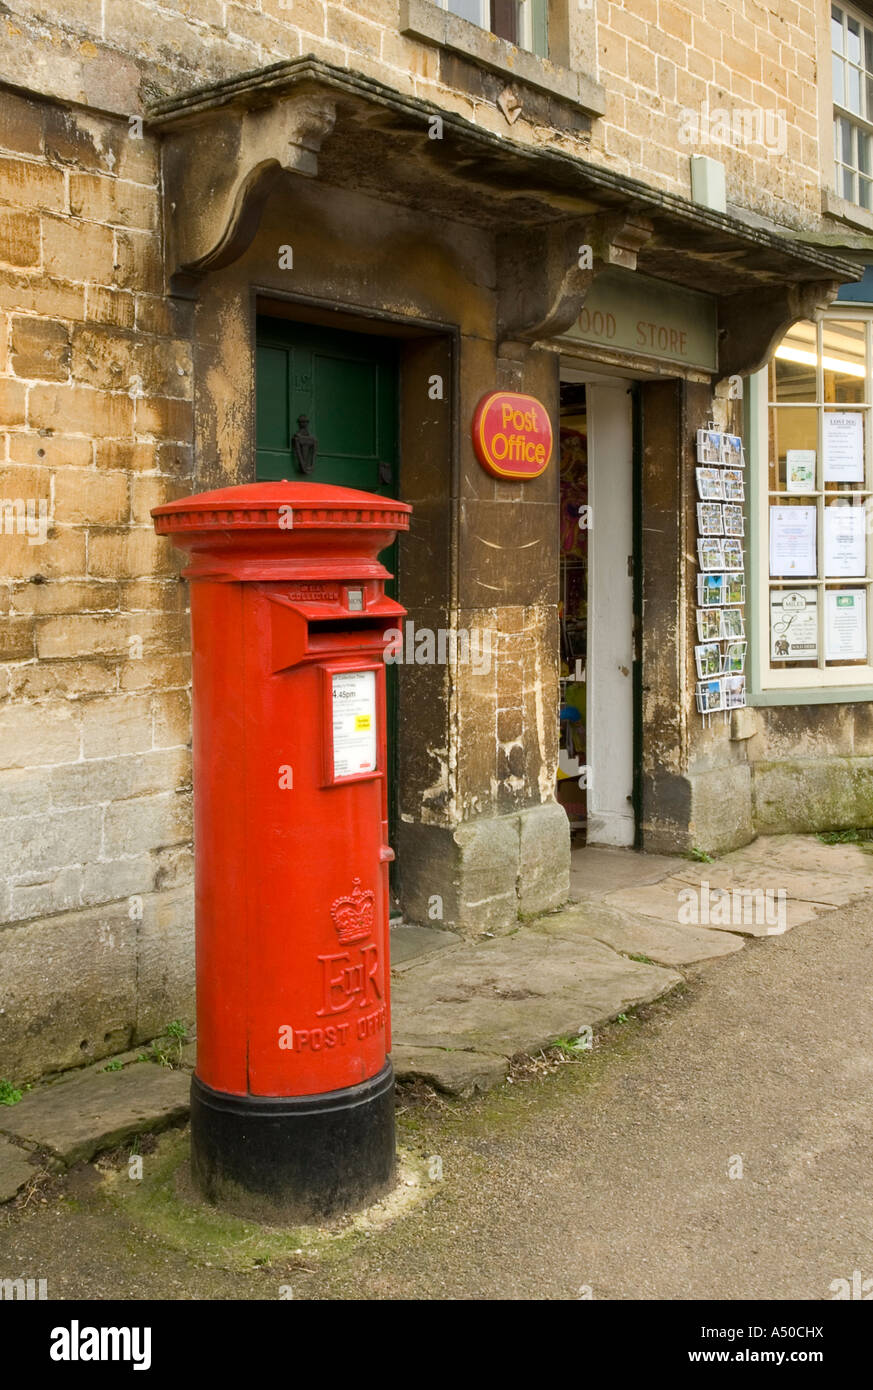 Village Post Office Stock Photo